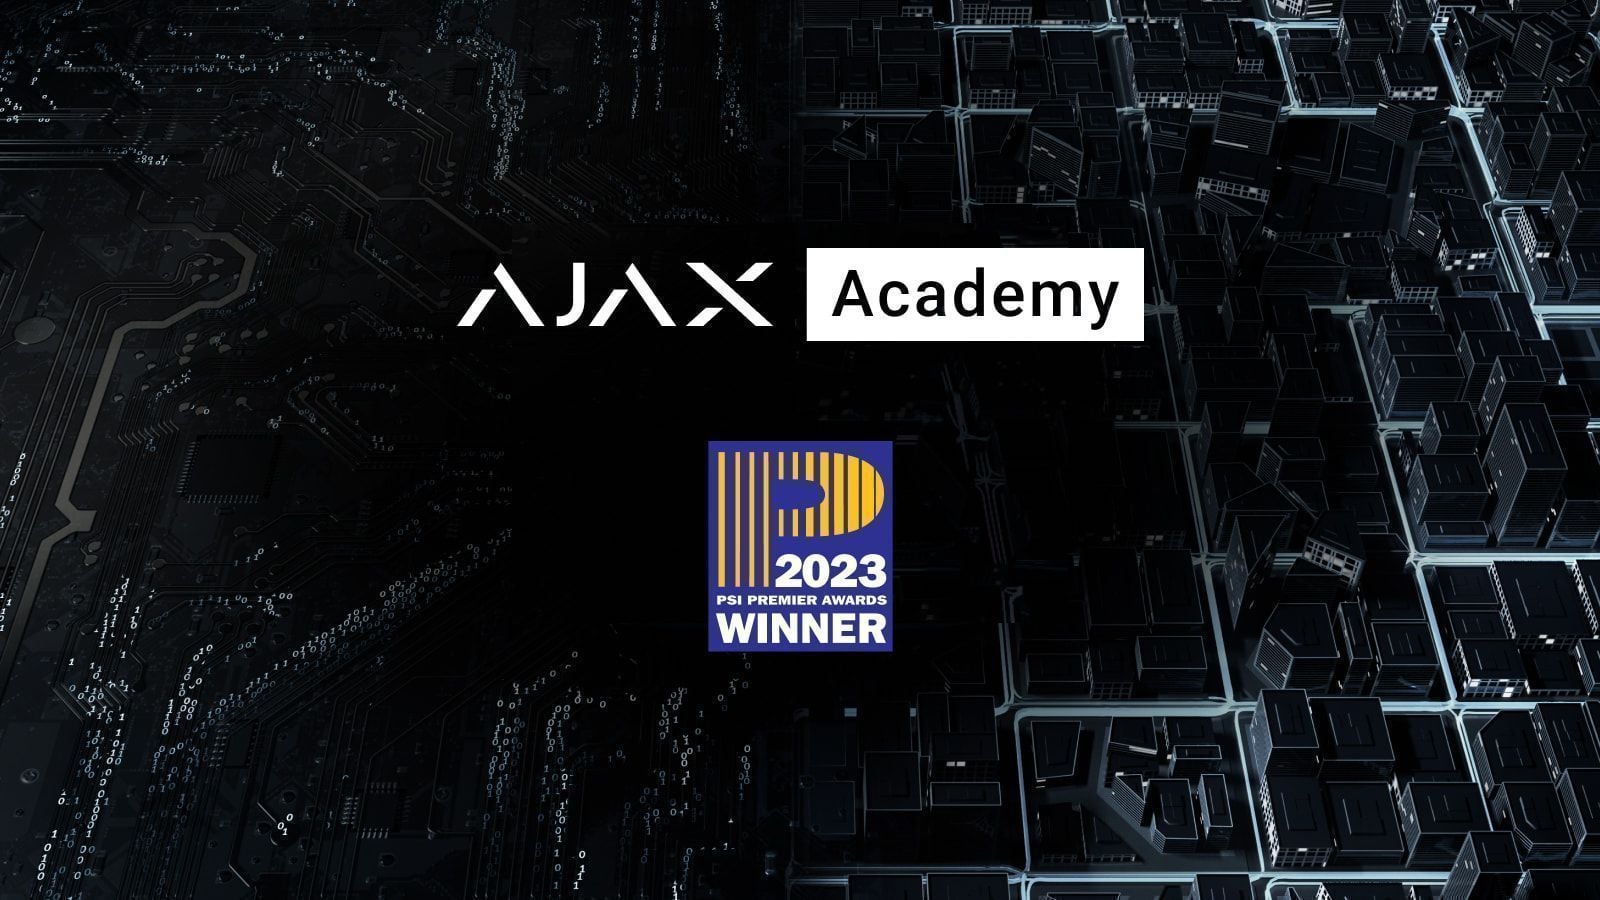 Ajax Academy vince il premio PSI Premier Awards 2023 come Programma di formazione dell'anno per i produttori